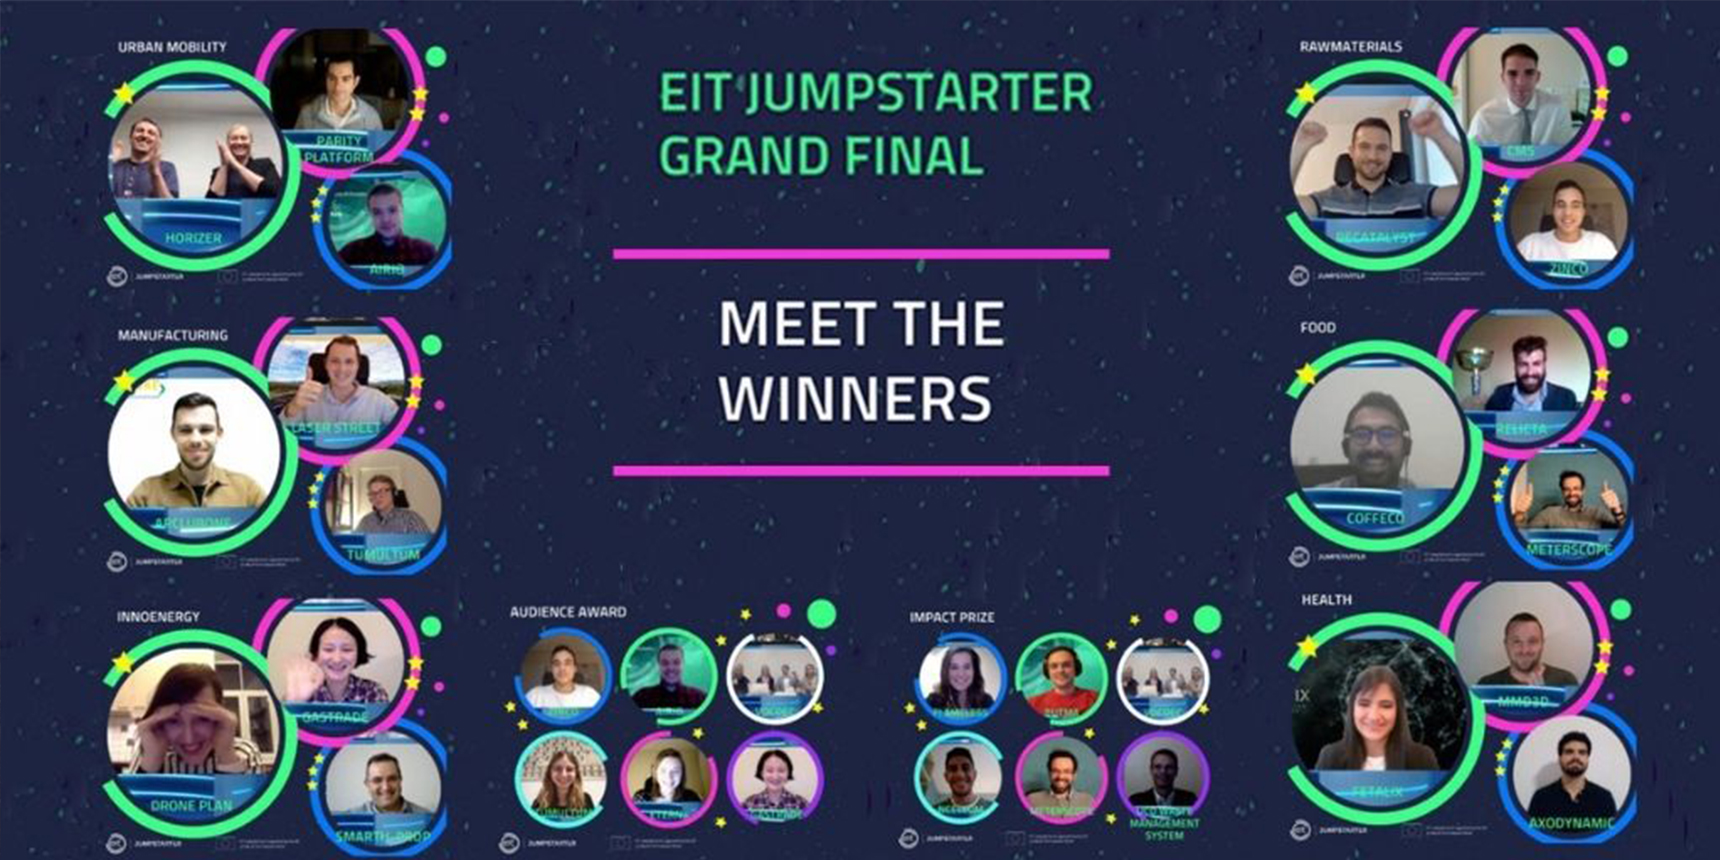 Winners announced for the EIT Jumpstarter Grand Final